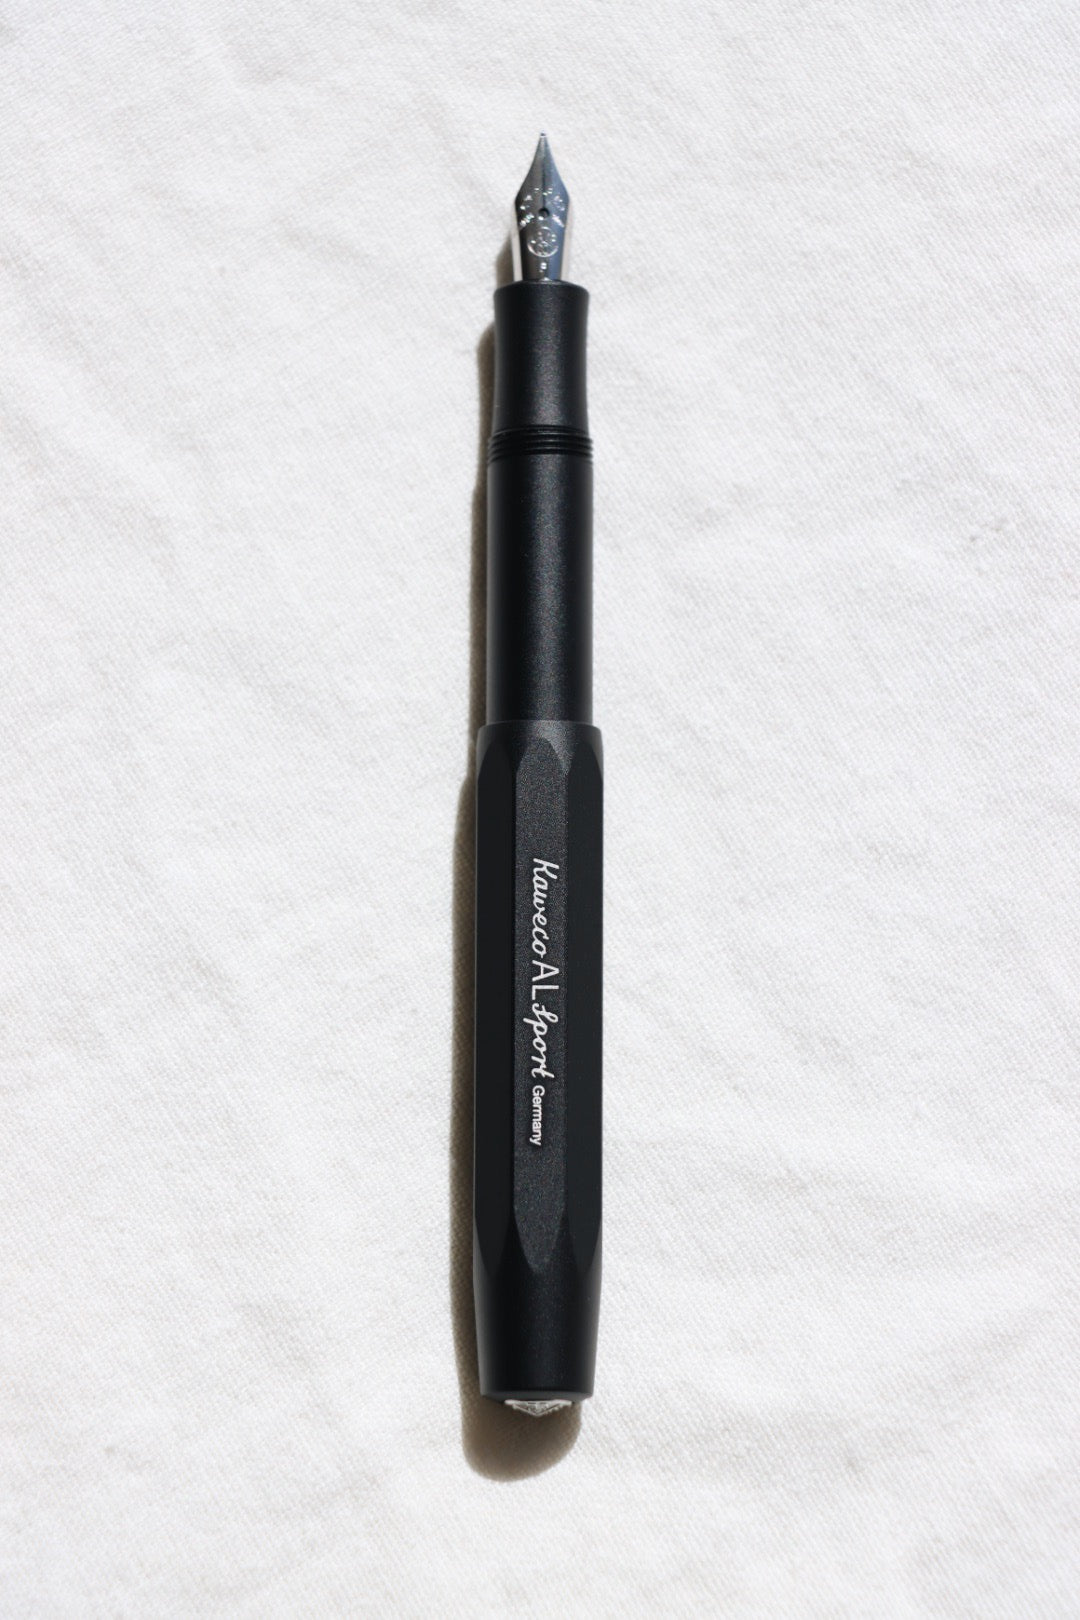 Bermad Waarschijnlijk Wissen Kaweco AL Sport Fountain Pen, Black Aluminum